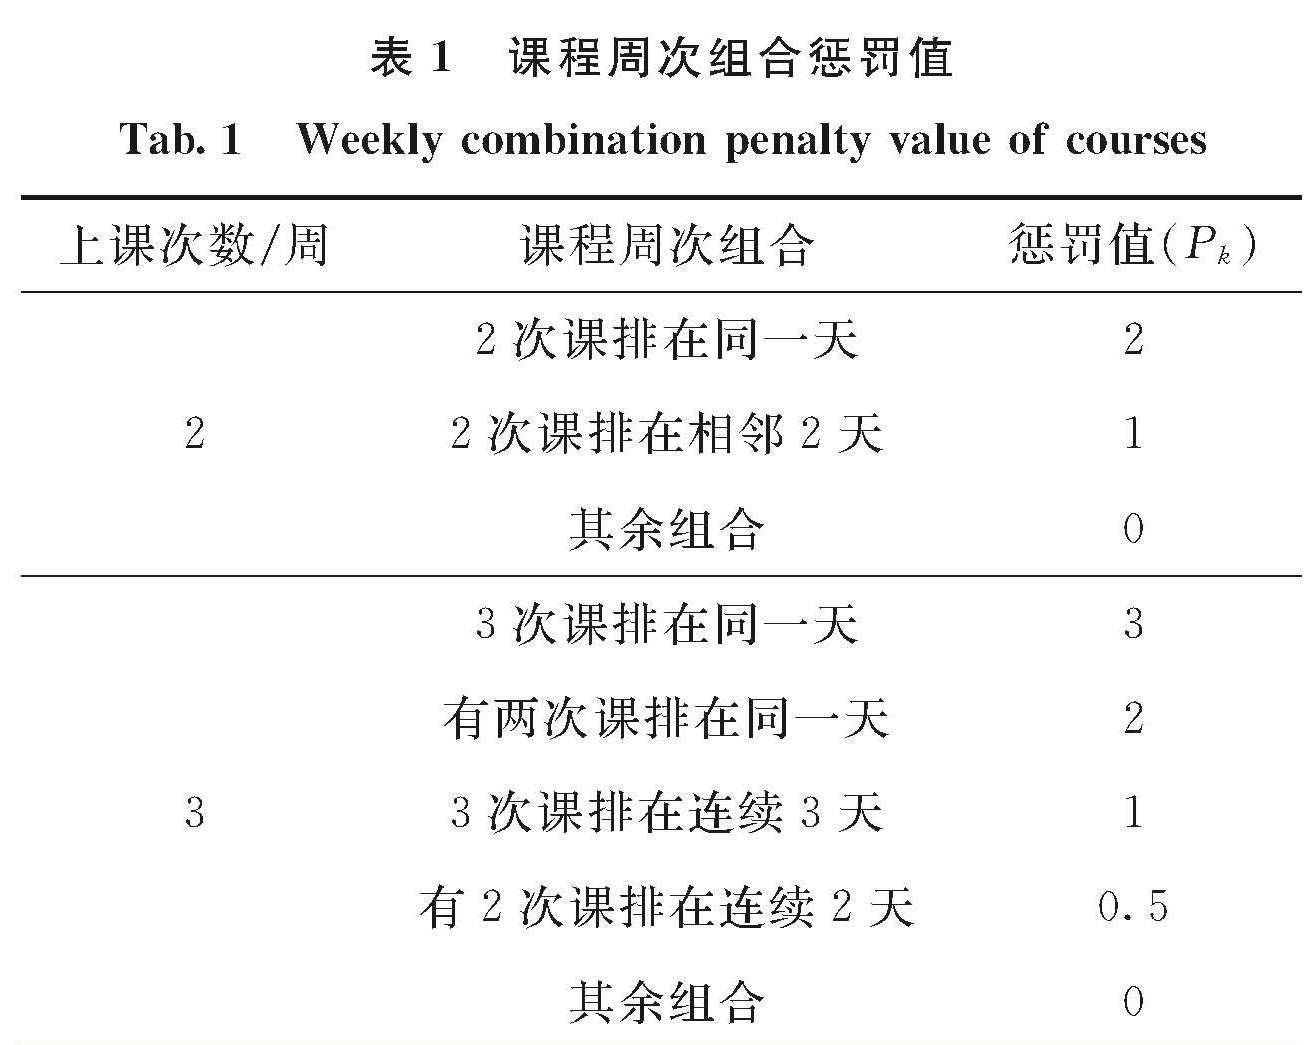 表1 课程周次组合惩罚值<br/>Tab.1 Weekly combination penalty value of courses